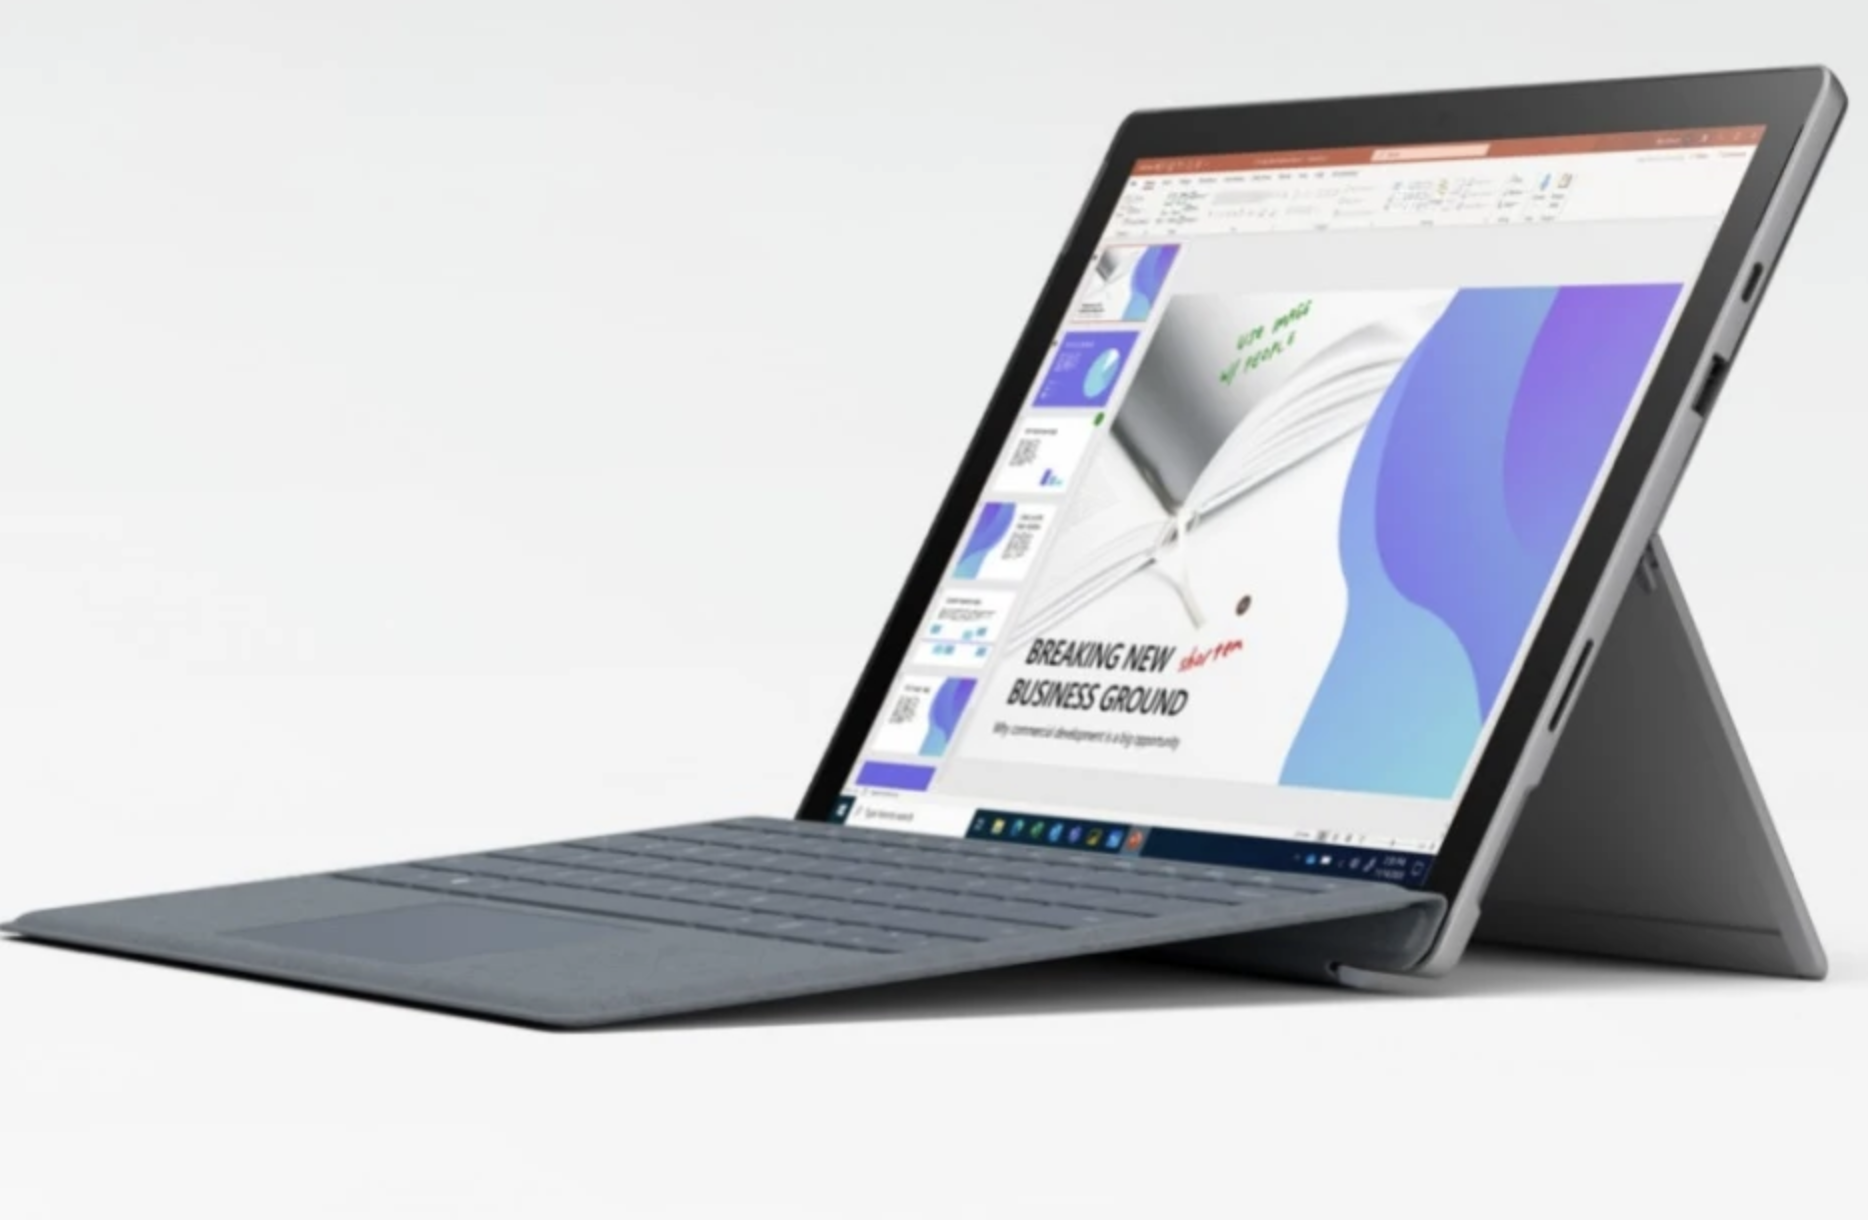 CES 2021 : Microsoft annonce la Surface Pro 7+